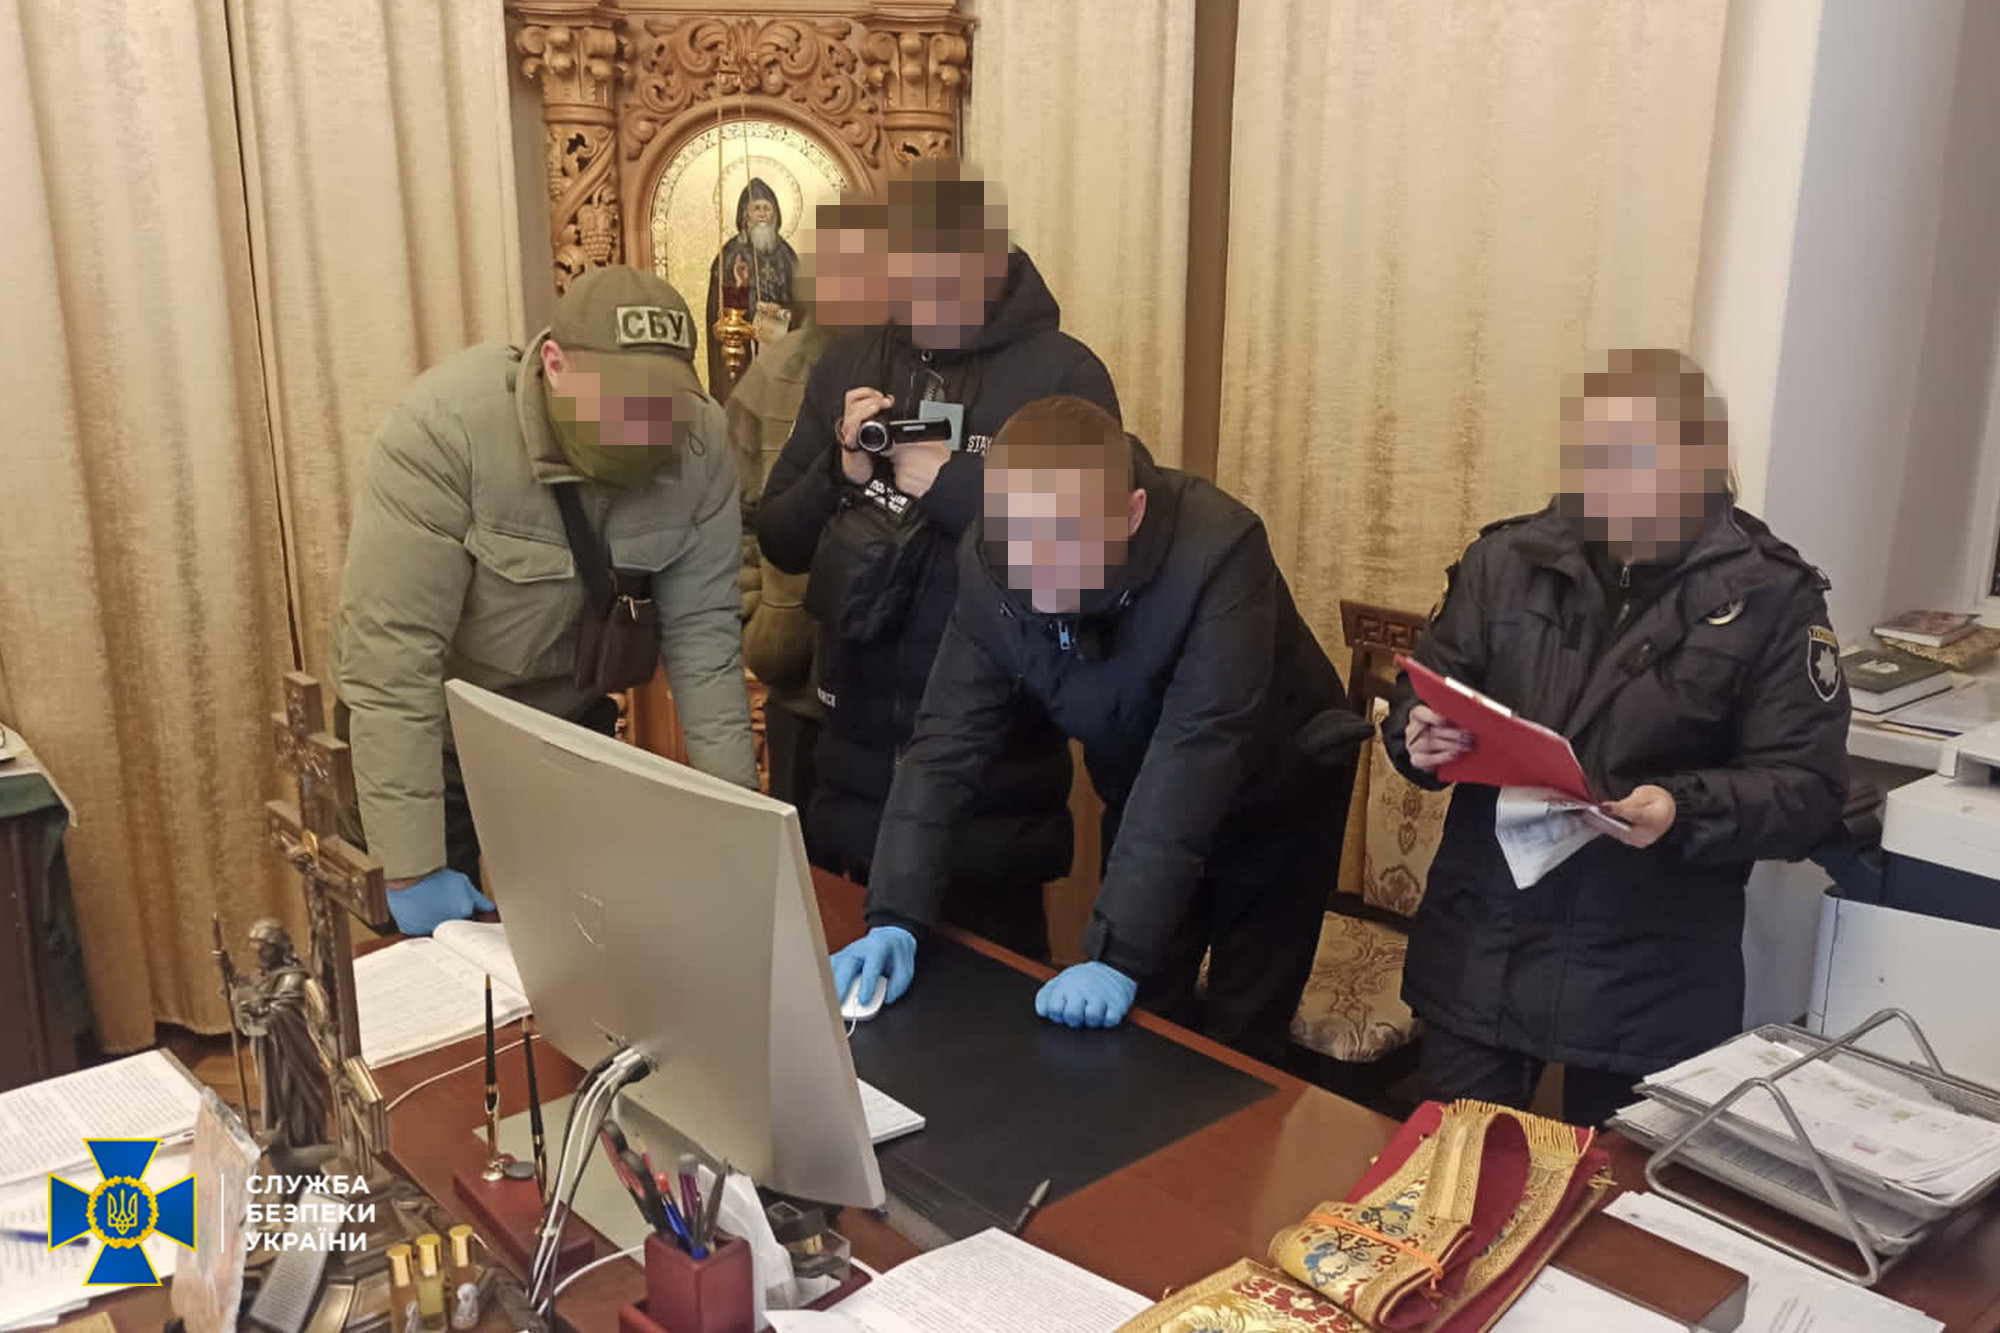 СБУ нашла в Ивано-Франковской епархии УПЦ (МП) материалы, отрицающие существование Украины